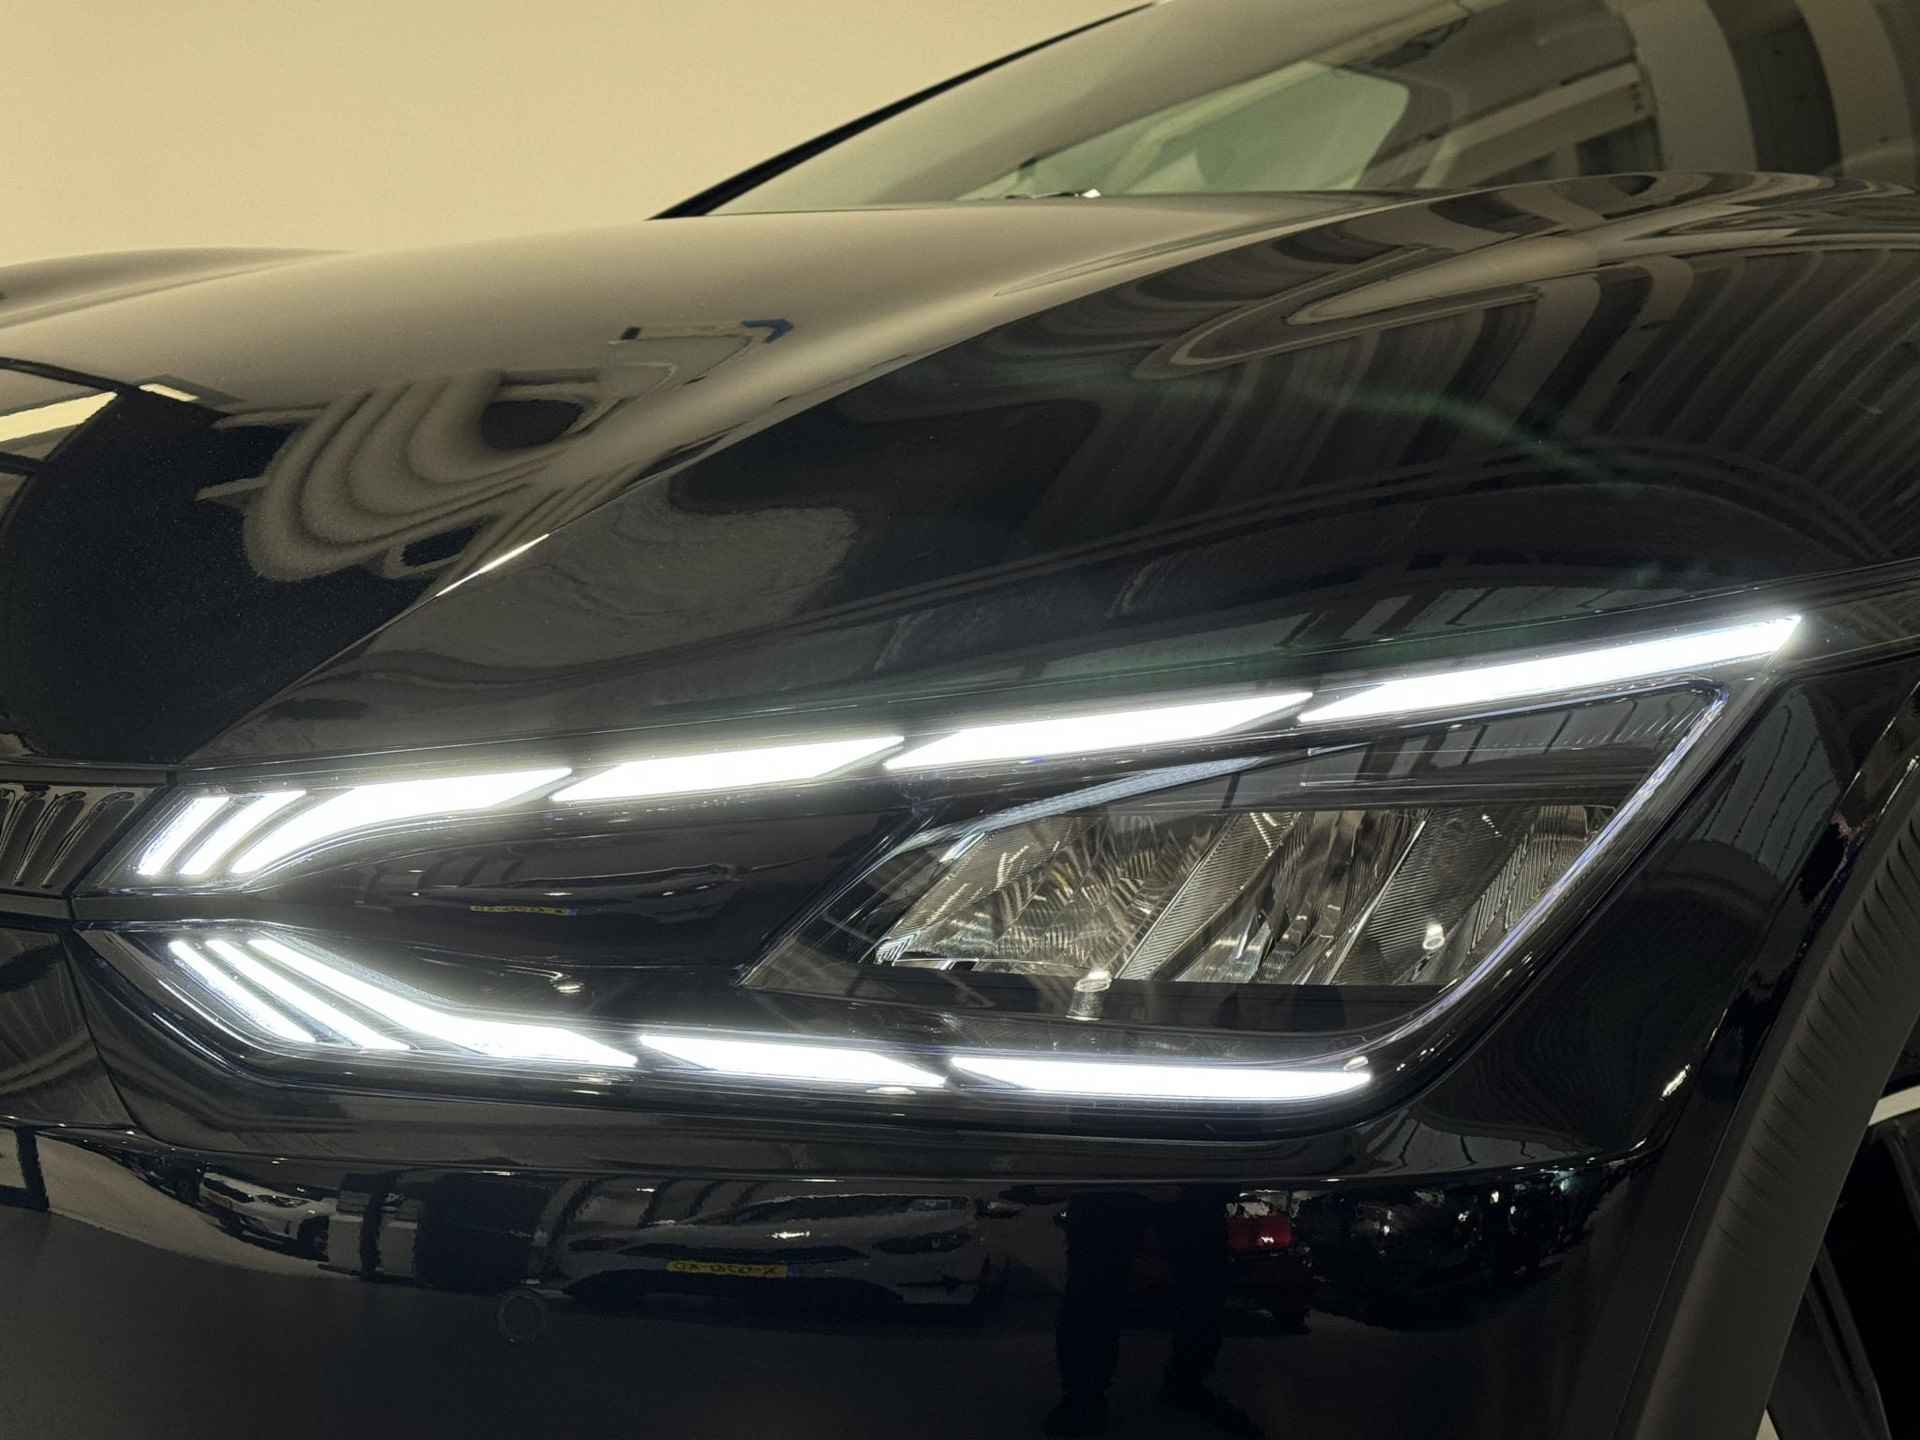 Kia EV6 Light Edition 58 kWh | €2.950,- overheidssubsidie + €2.950,- Kia subsidie! | €5.900,- voordeel! | Beperkte beschikbaarheid! | 180kW laadvermogen | 394 km WLTP-actieradius | Stoel-/stuurverwarming - 11/36